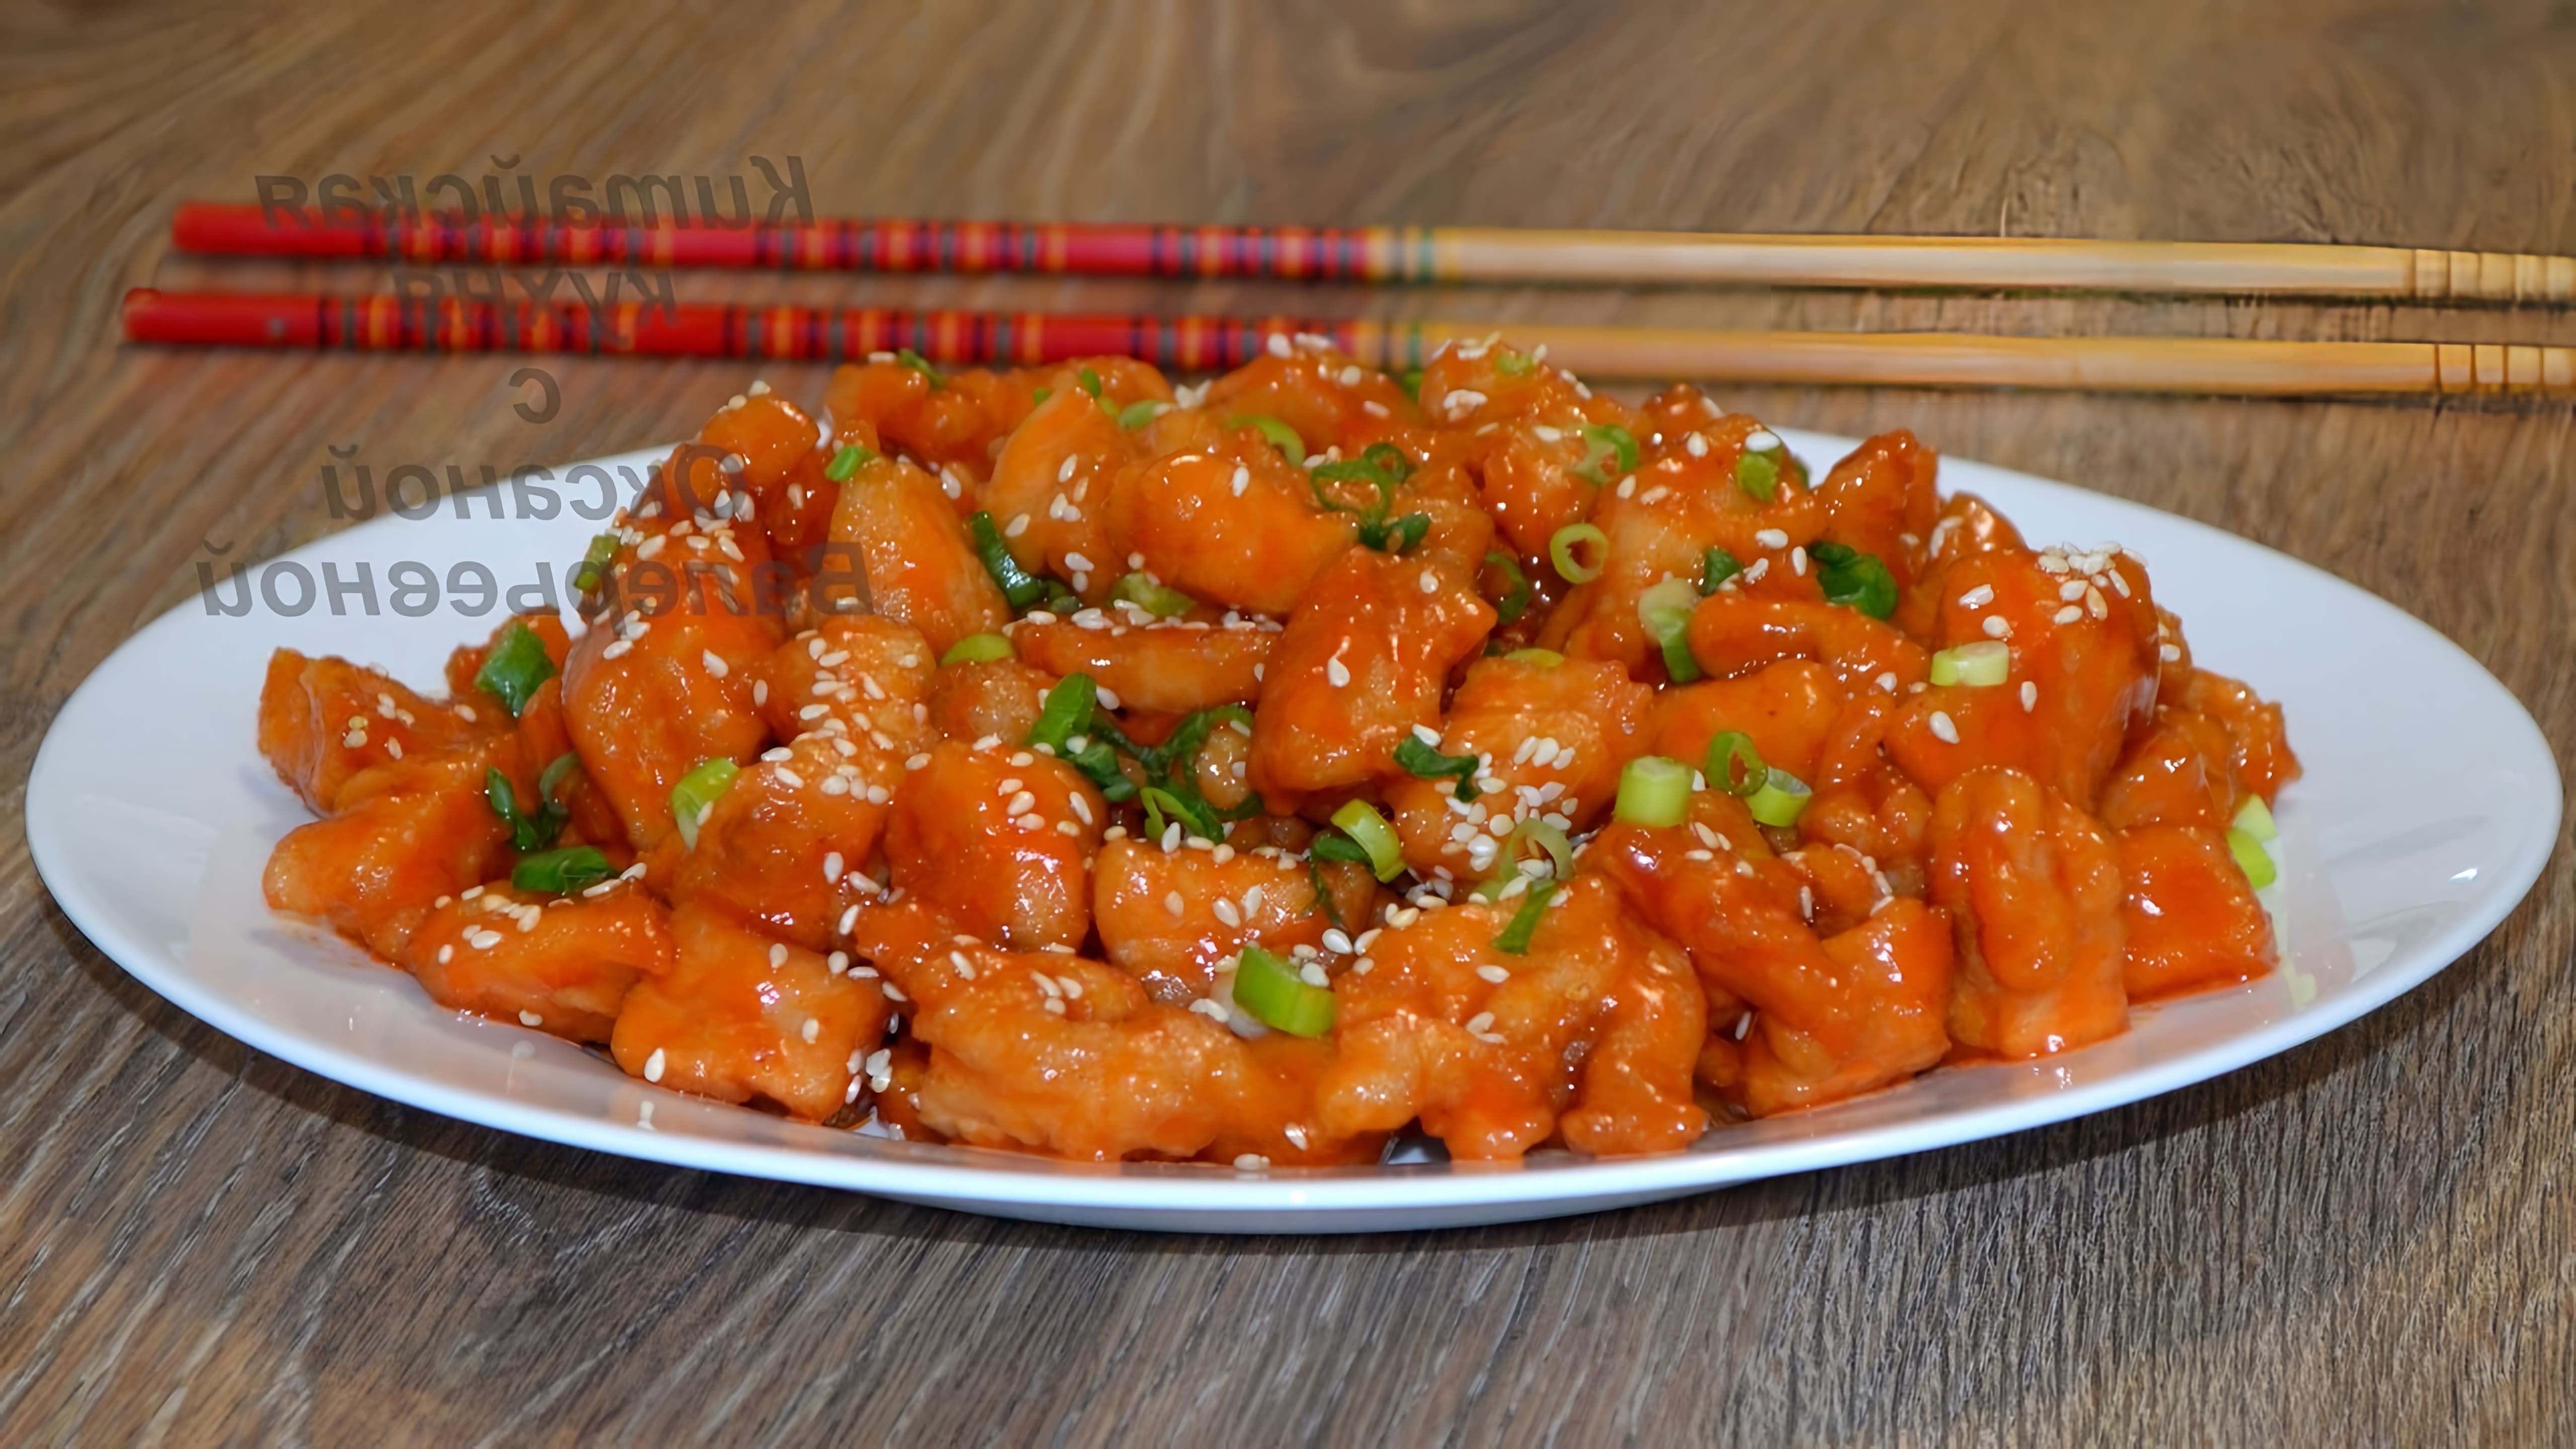 В этом видео демонстрируется рецепт приготовления курицы в кисло-сладком соусе, традиционного блюда китайской кухни